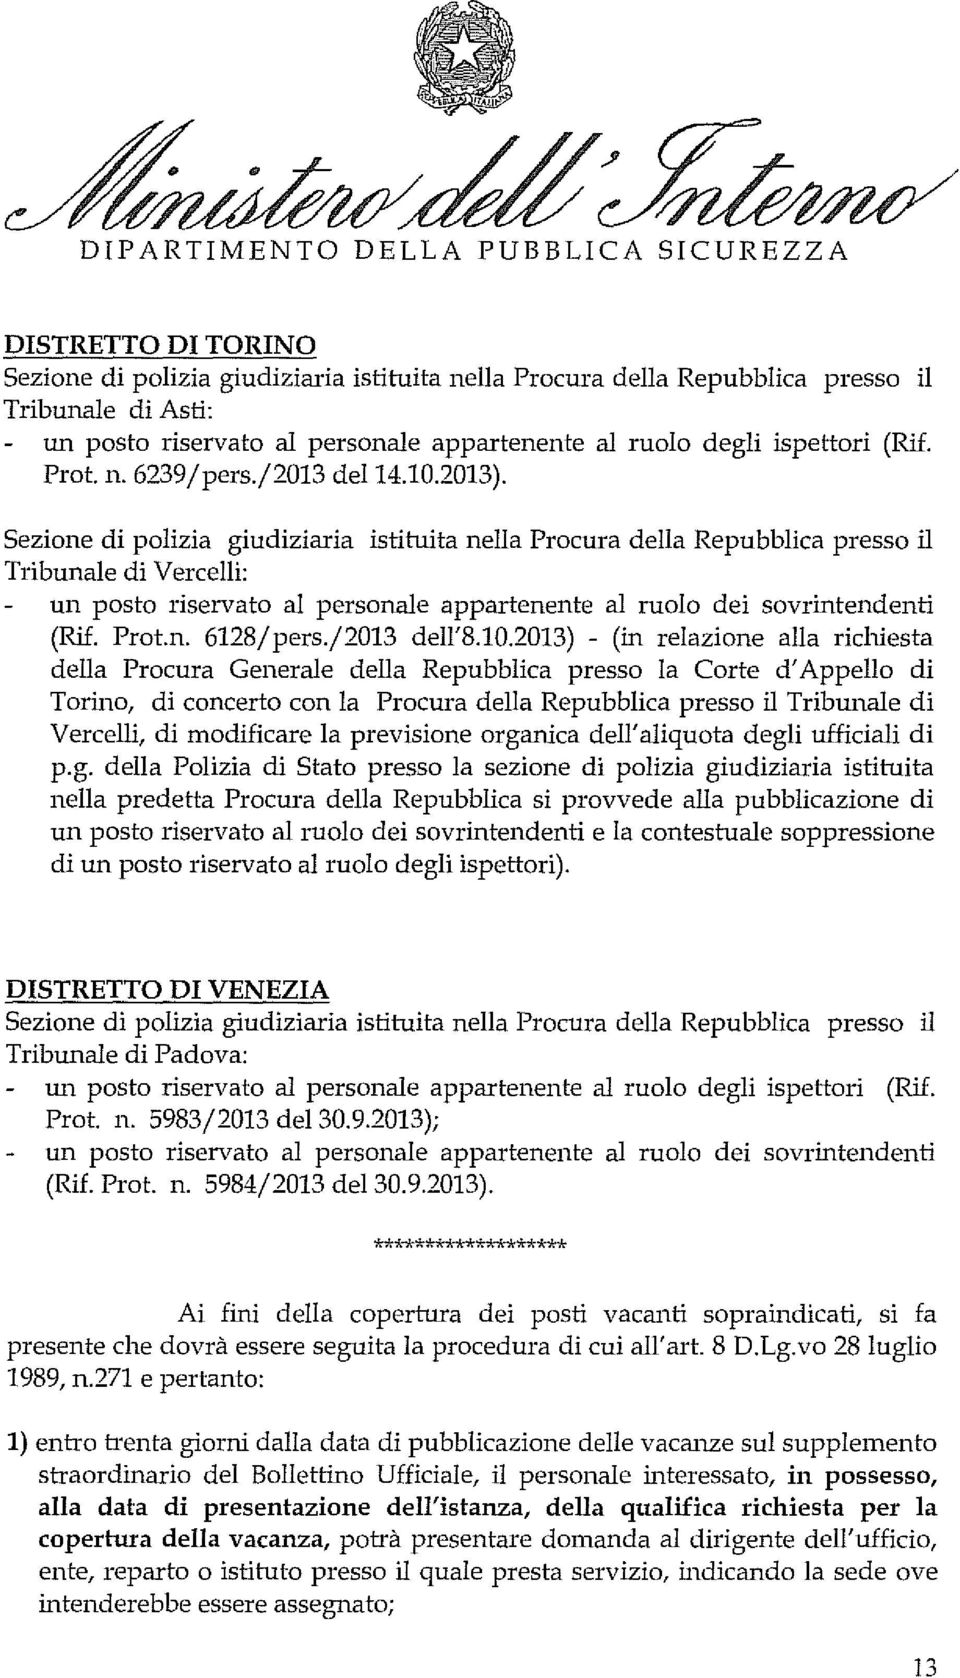 2013) - (in relazione alla richiesta della Procura Generale della Repubblica presso la Corte d'appello di Torino, di concerto con la Procura della Repubblica presso il Tribunale di Vercelli, di